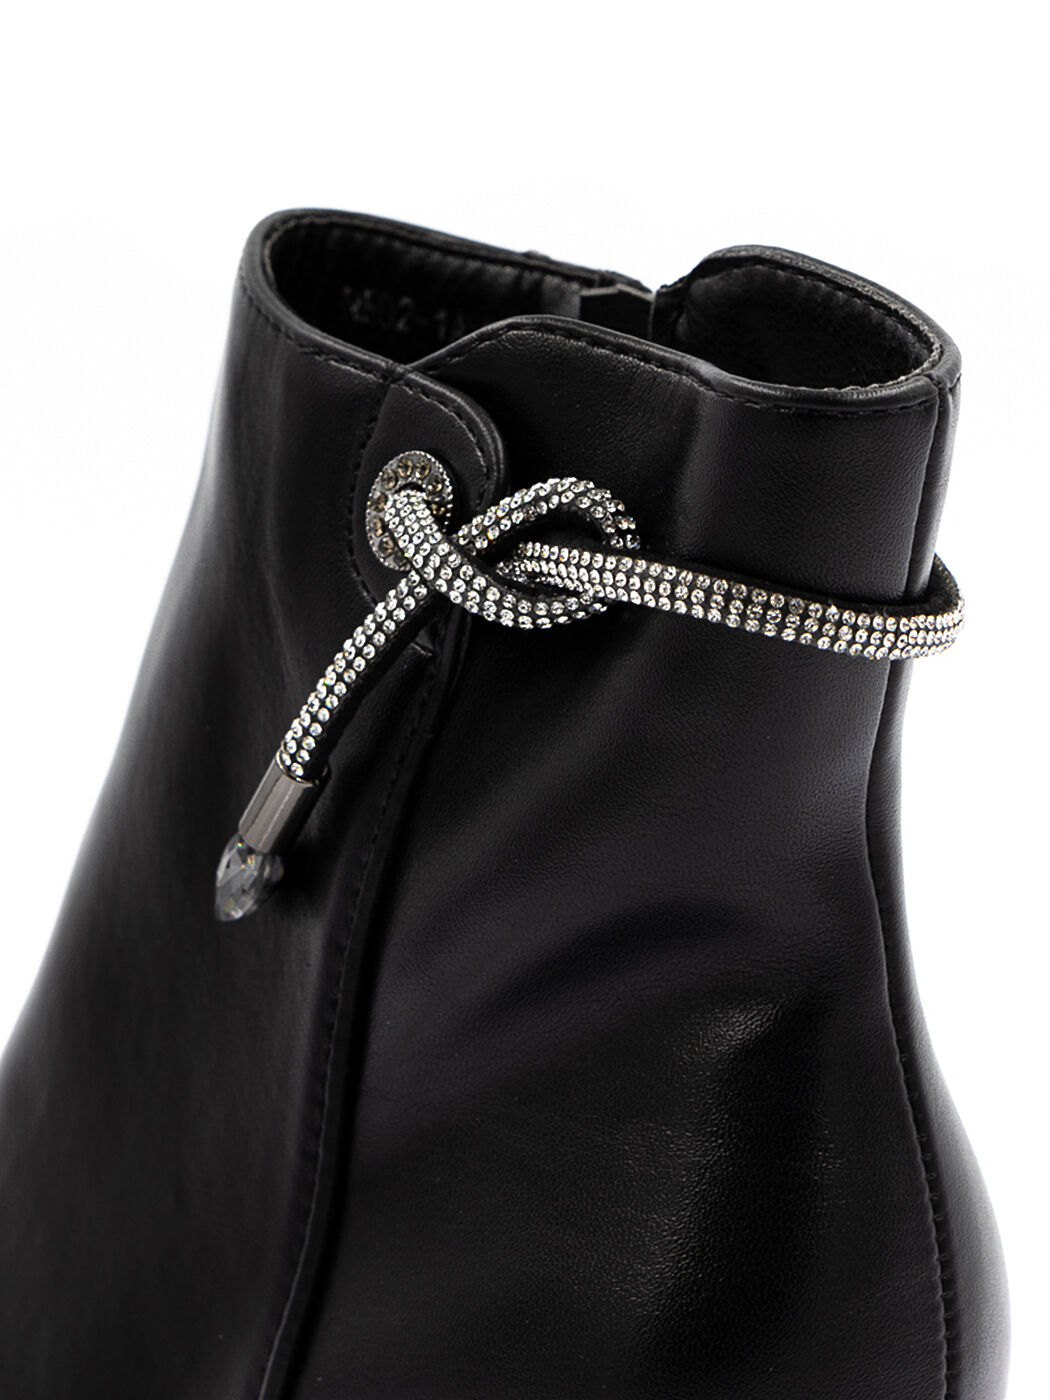 Ботинки женские черные экокожа каблук устойчивый демисезон от производителя AM вид 3